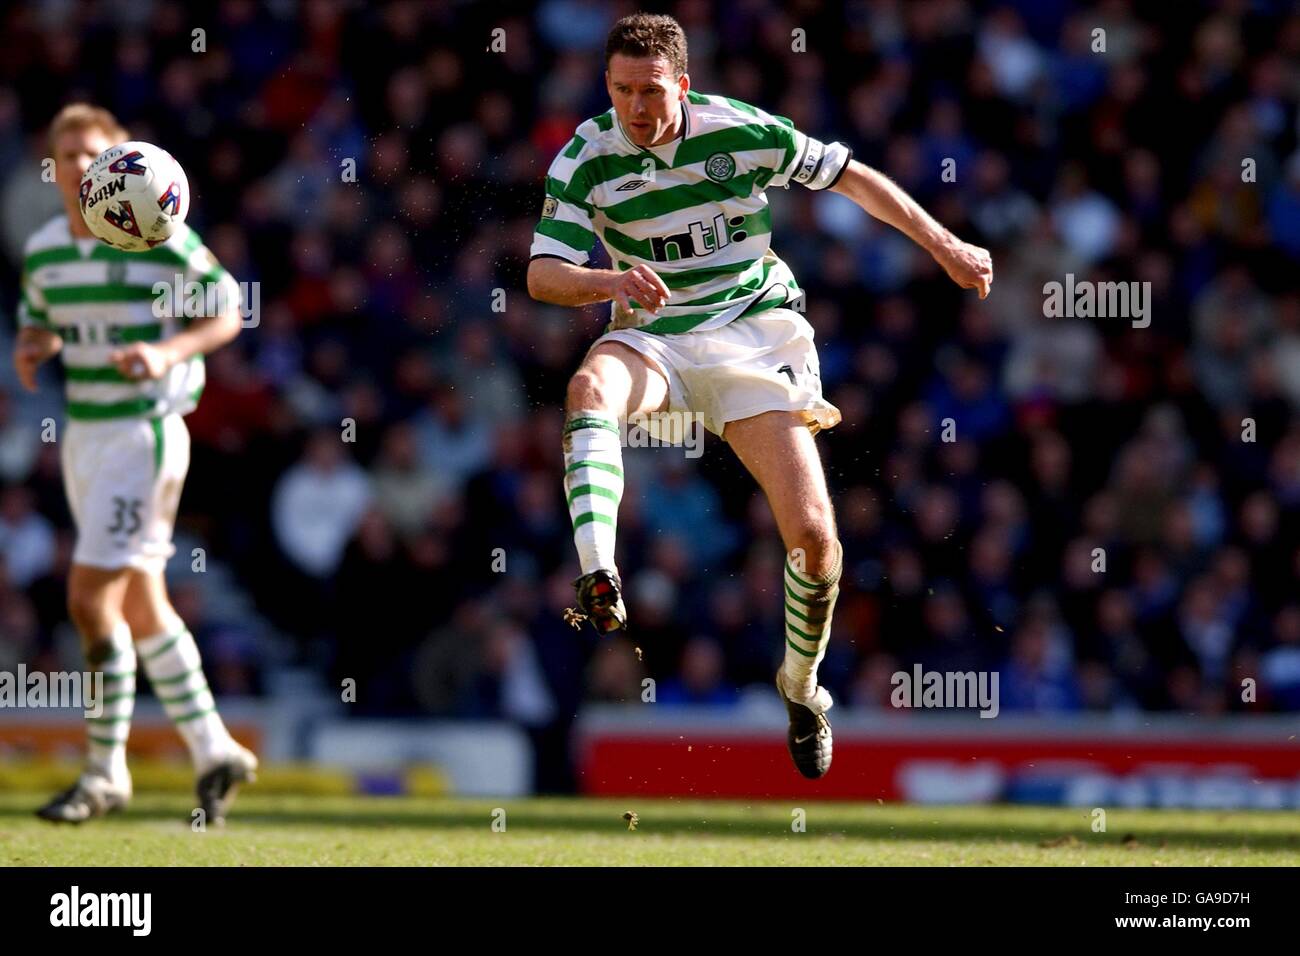 Scottish Soccer - Bank Of Scotland Premier League - Rangers v Celtic. Celtic's Paul Lambert volleys the ball forward Stock Photo